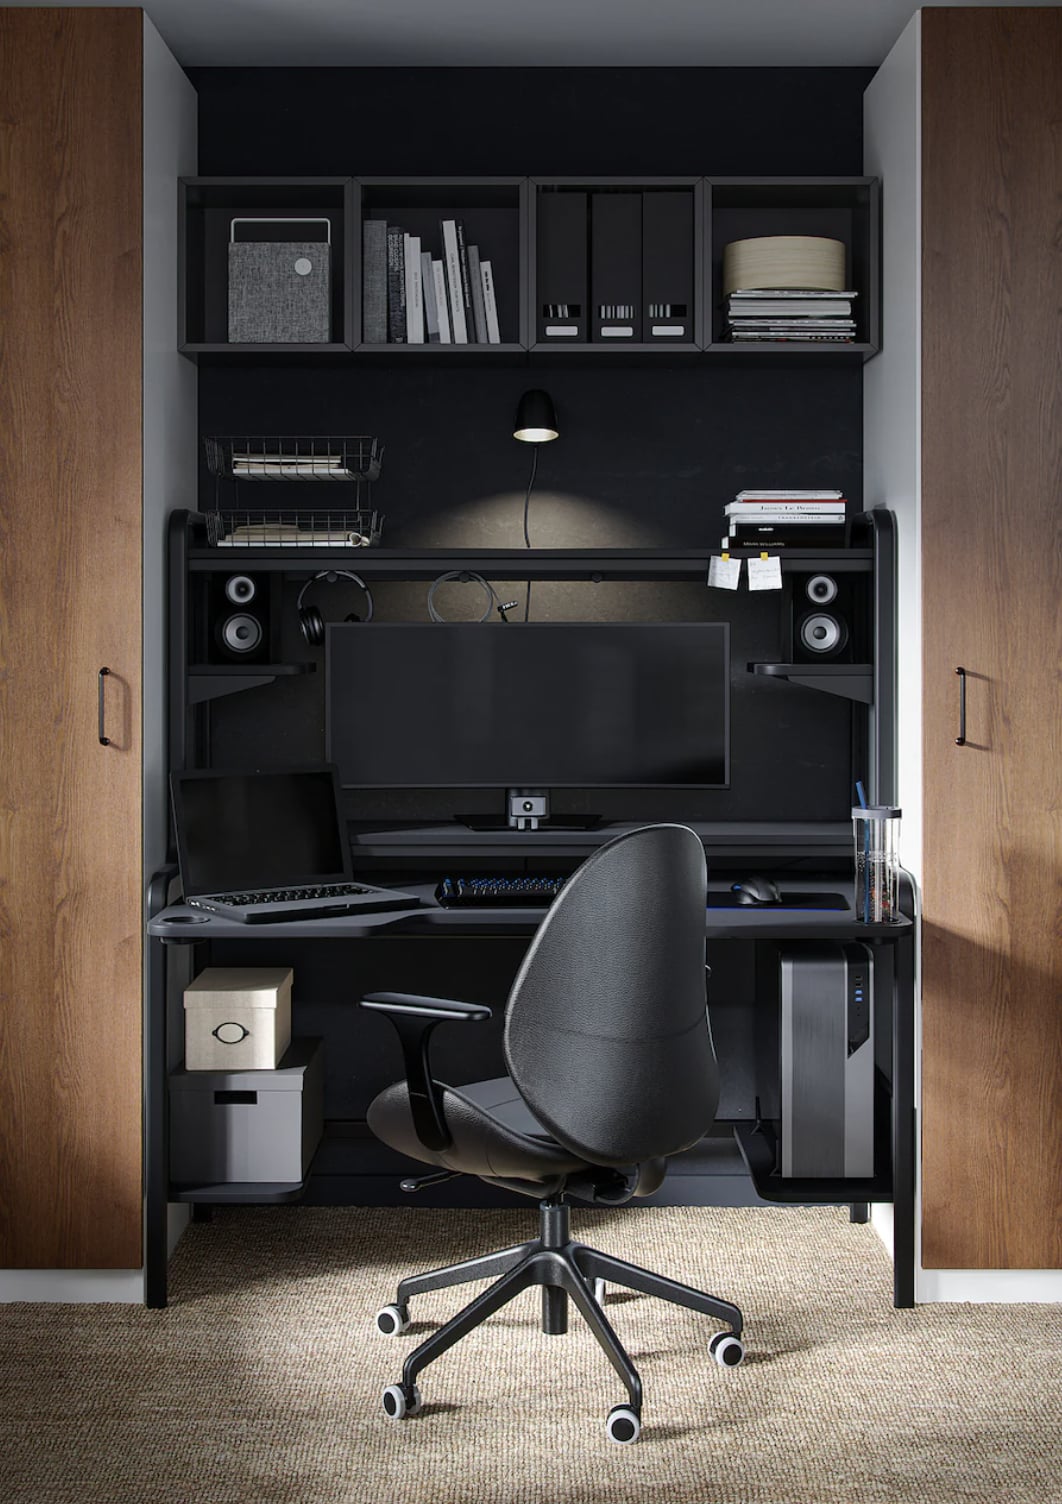 Home Office Desks - Office Desks for Home - IKEA